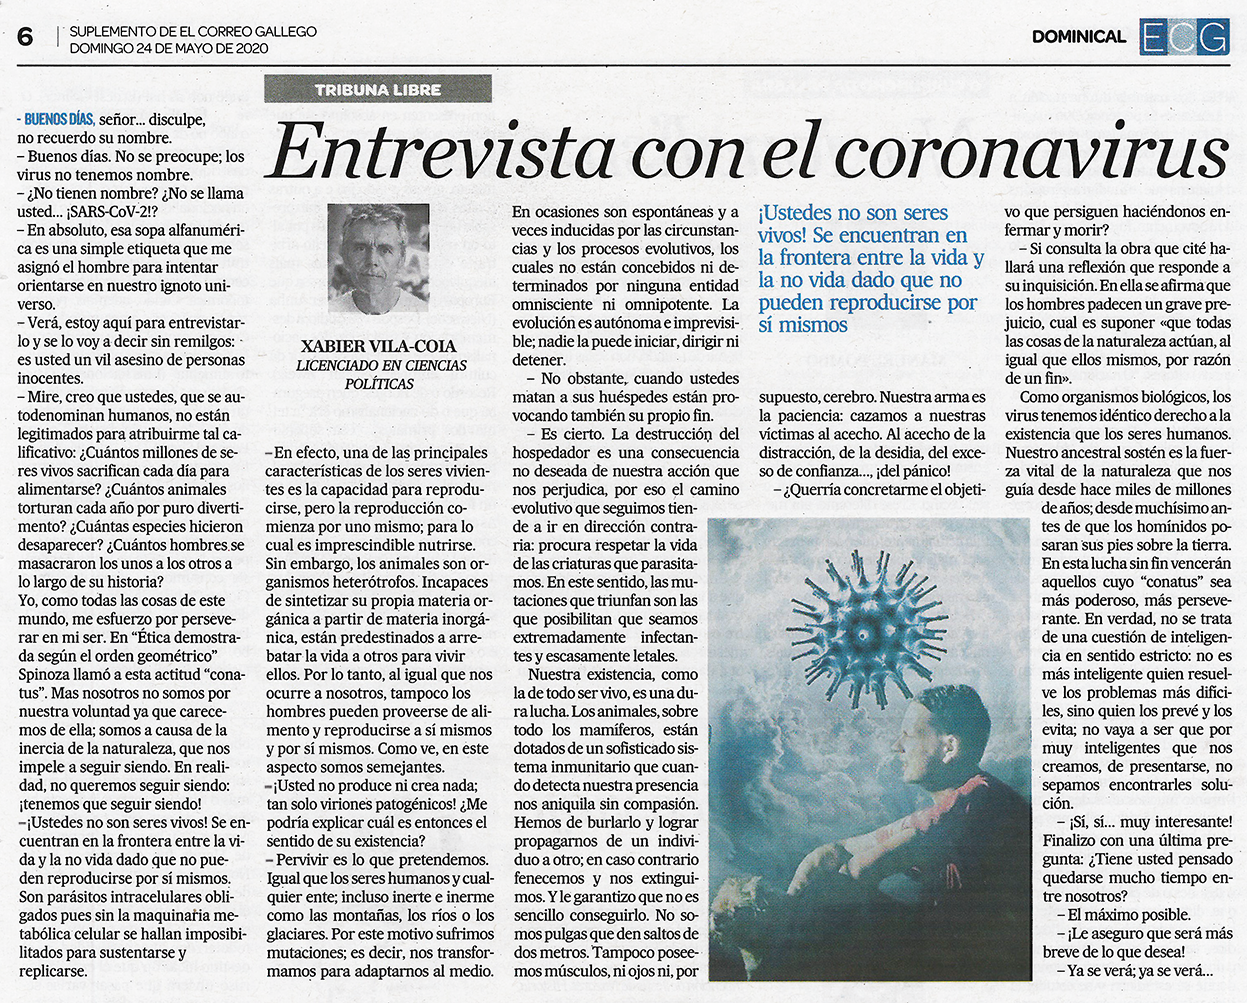 Artículo de opinión de Xabier Vila-Coia titulado "Entrevista con el Coronavirus", publicado en los diarios "El Correo Gallego", "Atlántico" y "La Región", en mayo de 2020.